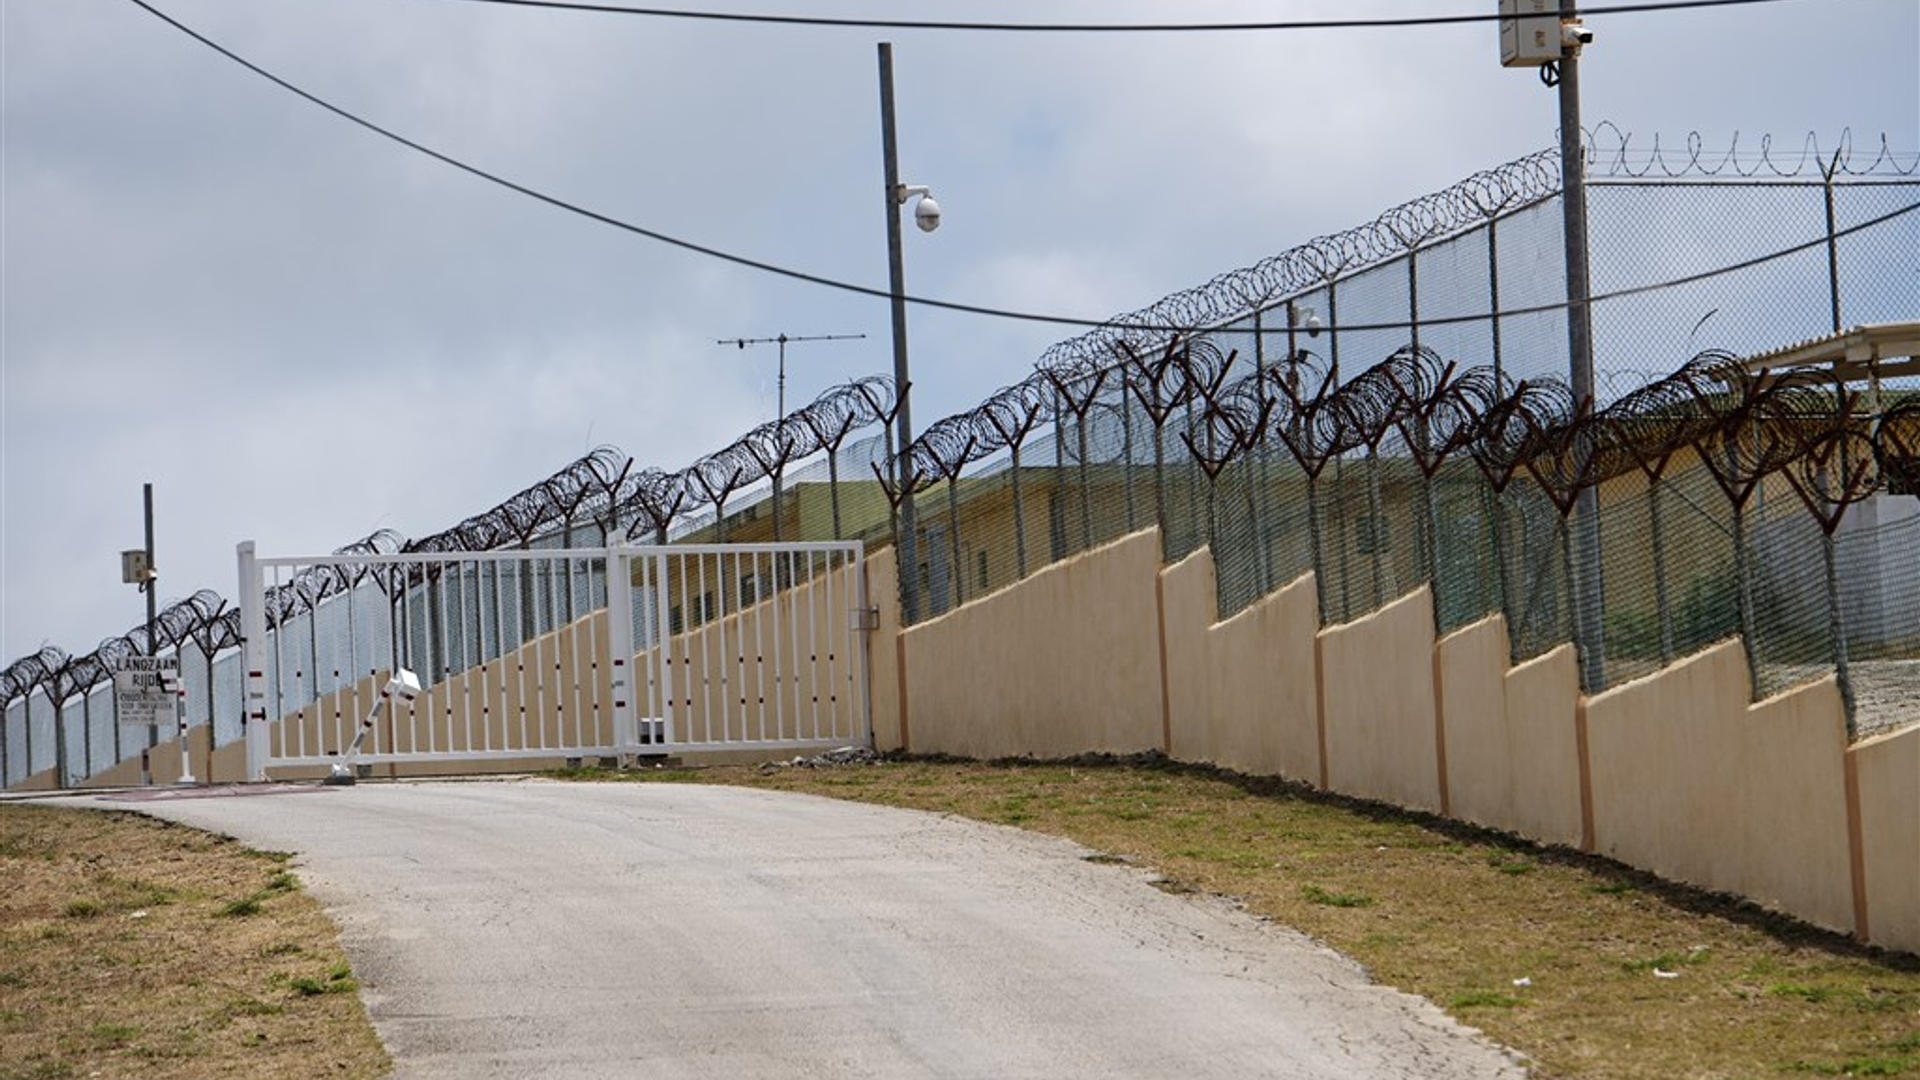 gevangenis curacao venezuela anp